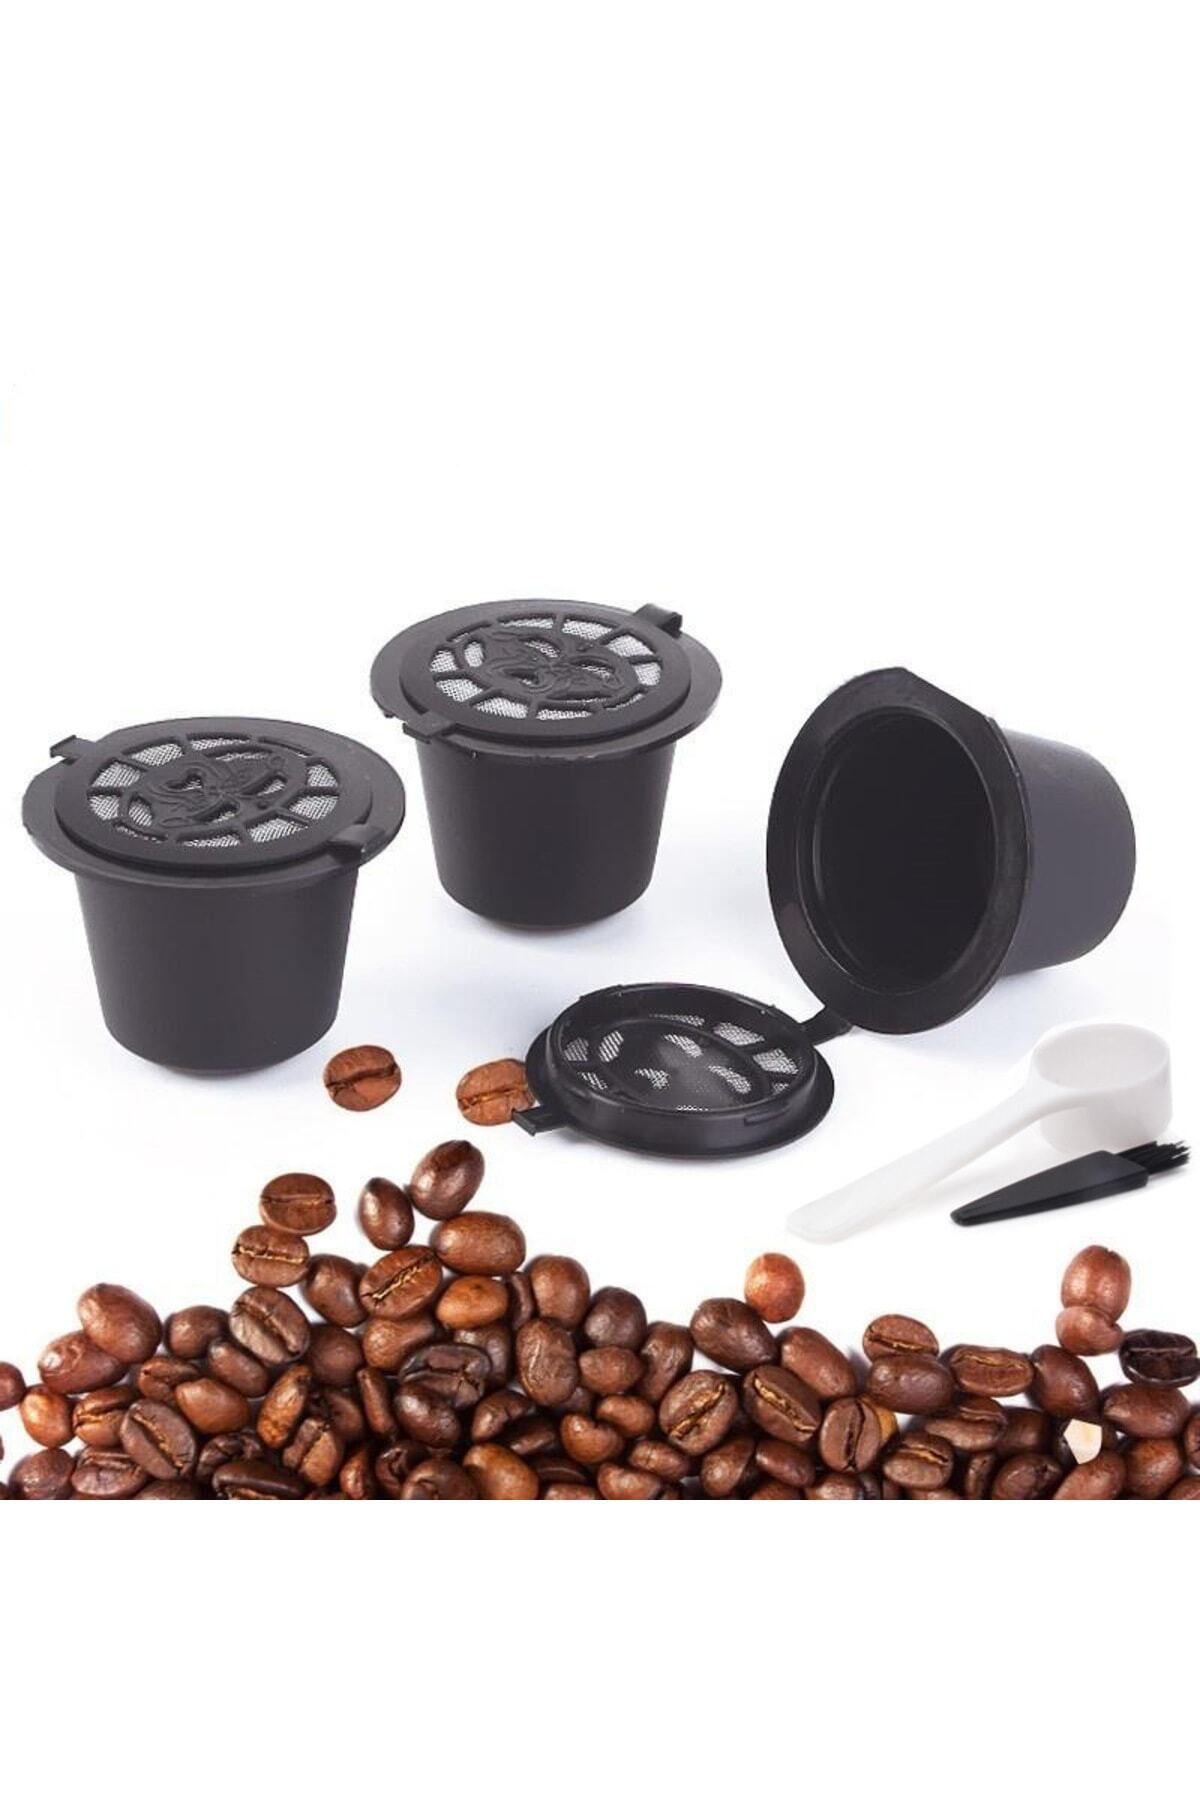 SONREYON 3 Adet Doldurulabilir Nespresso Uyumlu Kahve Kapsülü ( Yıkayıp Tekrar Doldurabilirsiniz.)